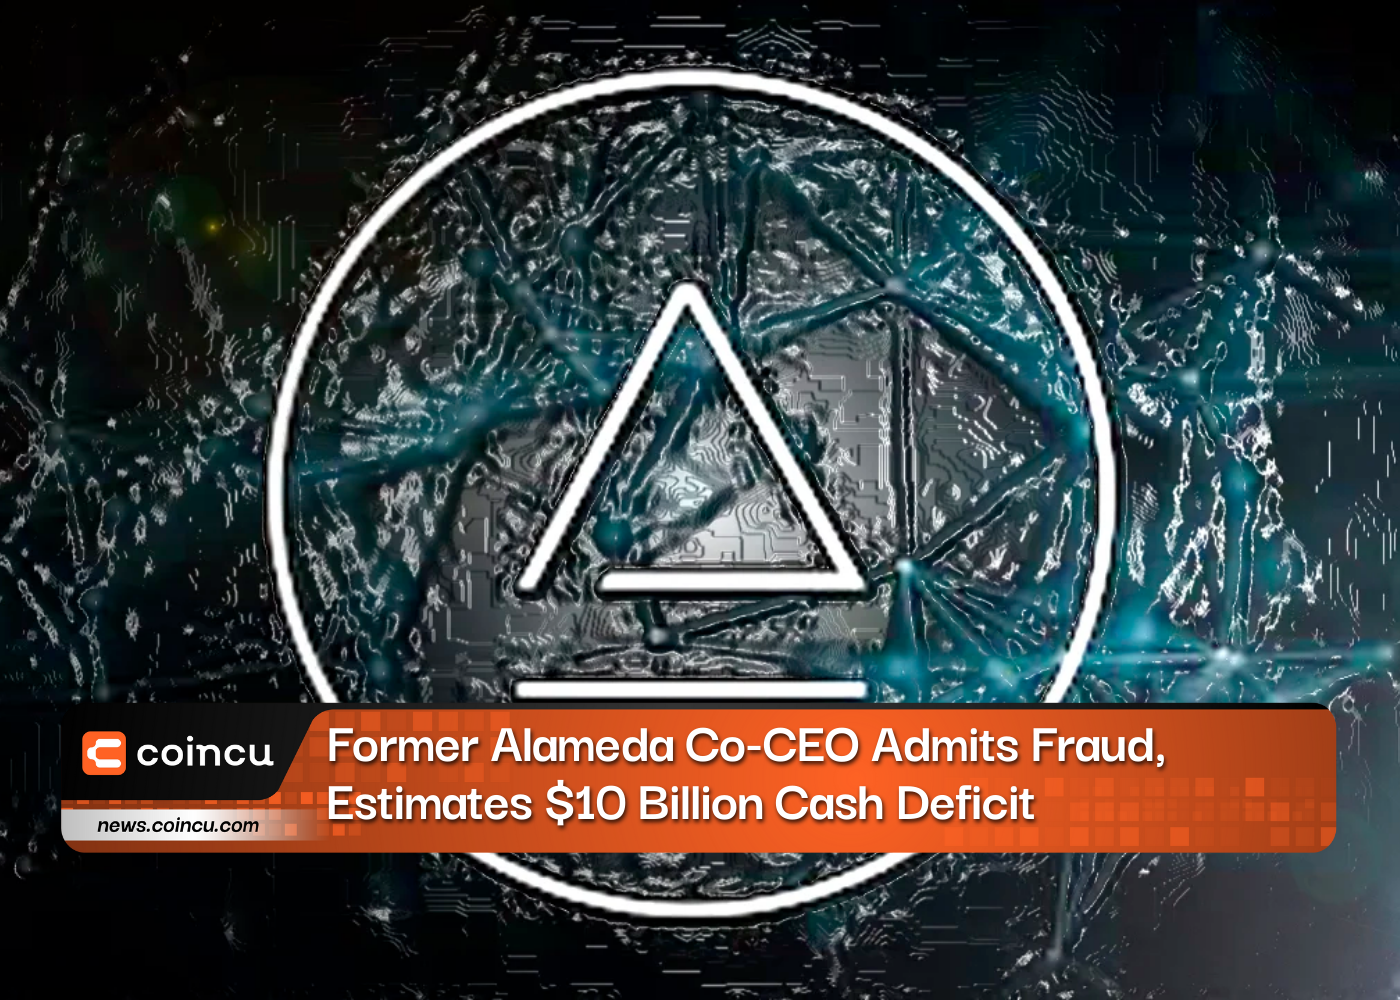 El ex codirector ejecutivo de Alameda admite fraude y estima un déficit de efectivo de 10 mil millones de dólares